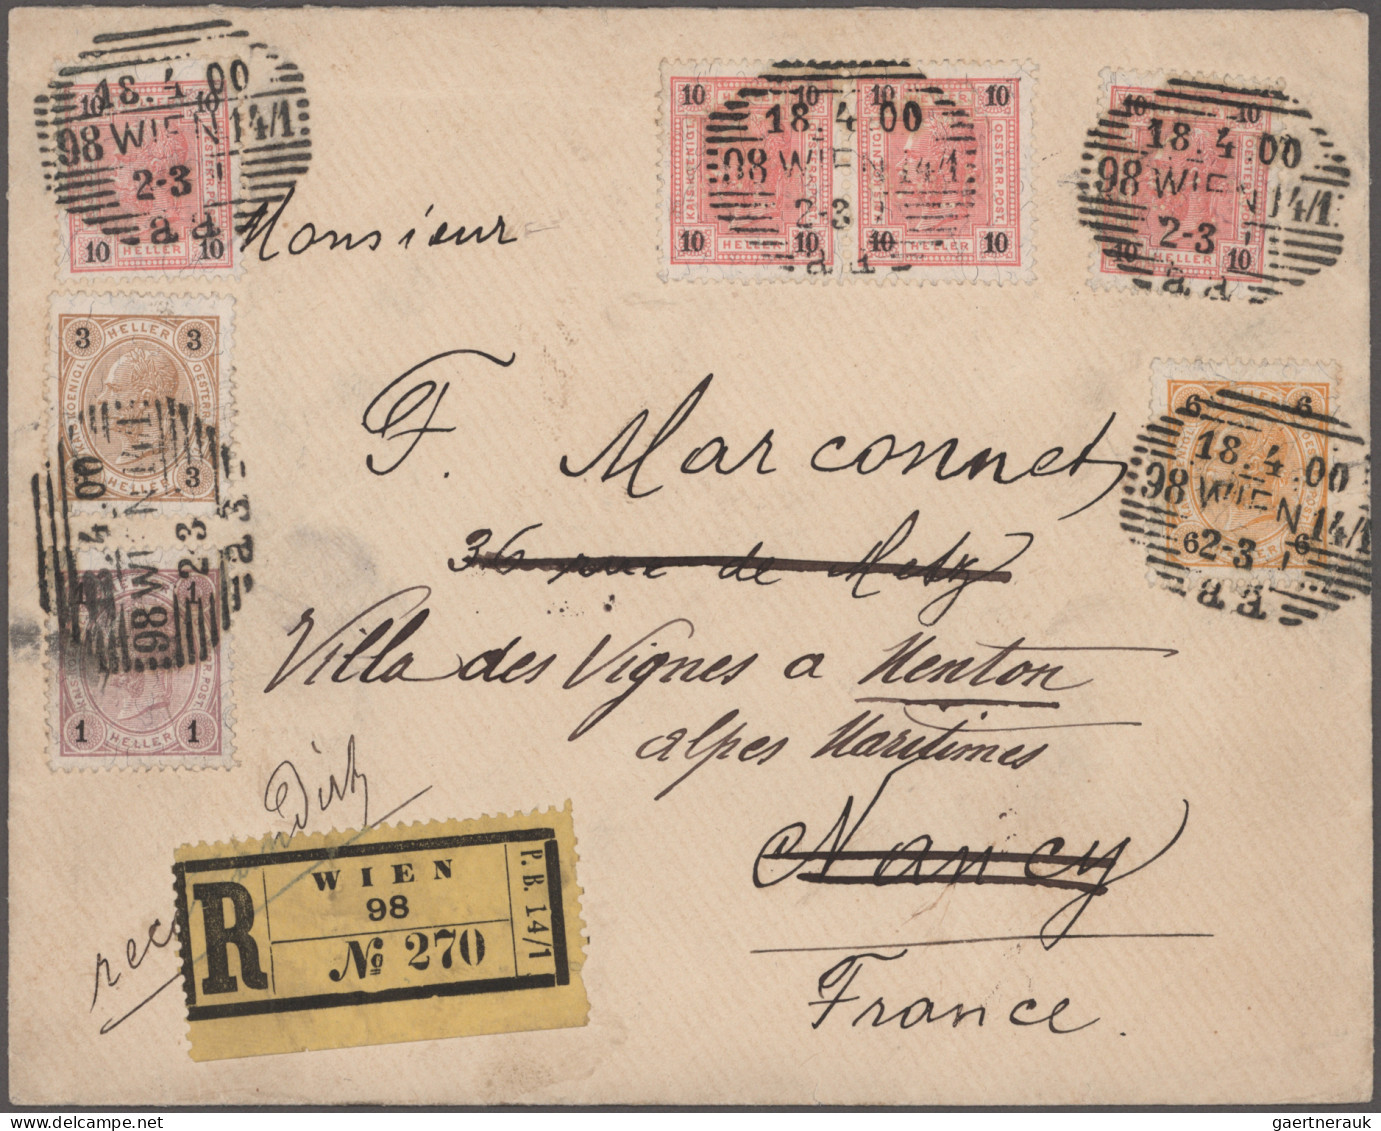 Österreich: 1850/1970 (ca.), guter Posten von ca. 310 Briefen und Karten in nett